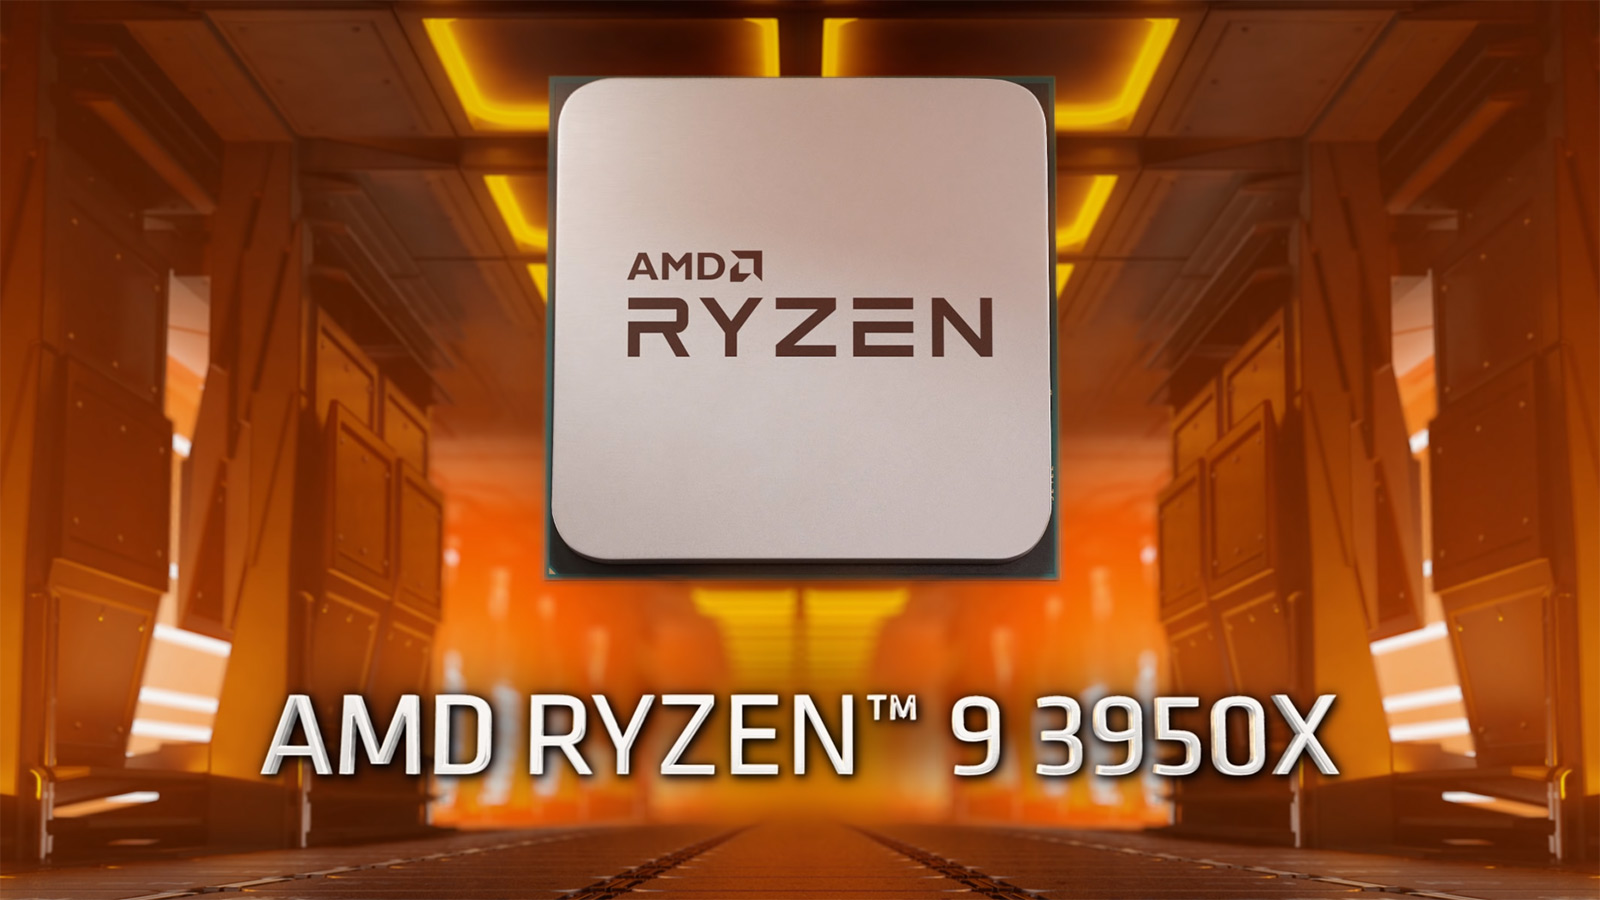 AMD Ryzen 9 3950X lehen dendan aurkitu da